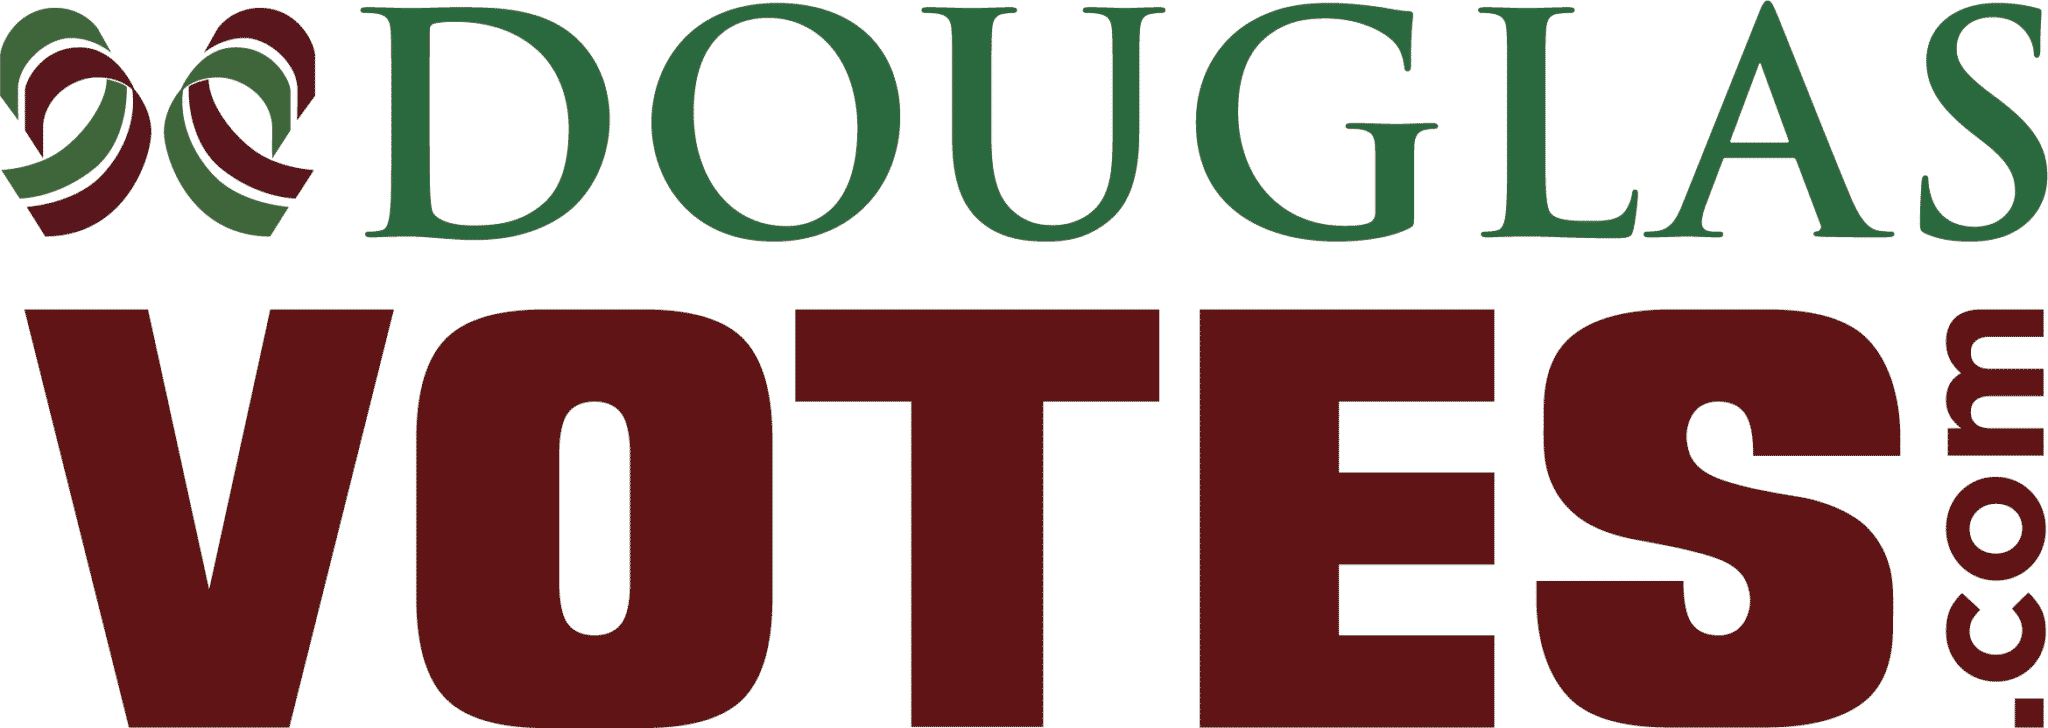 Elections Douglas County